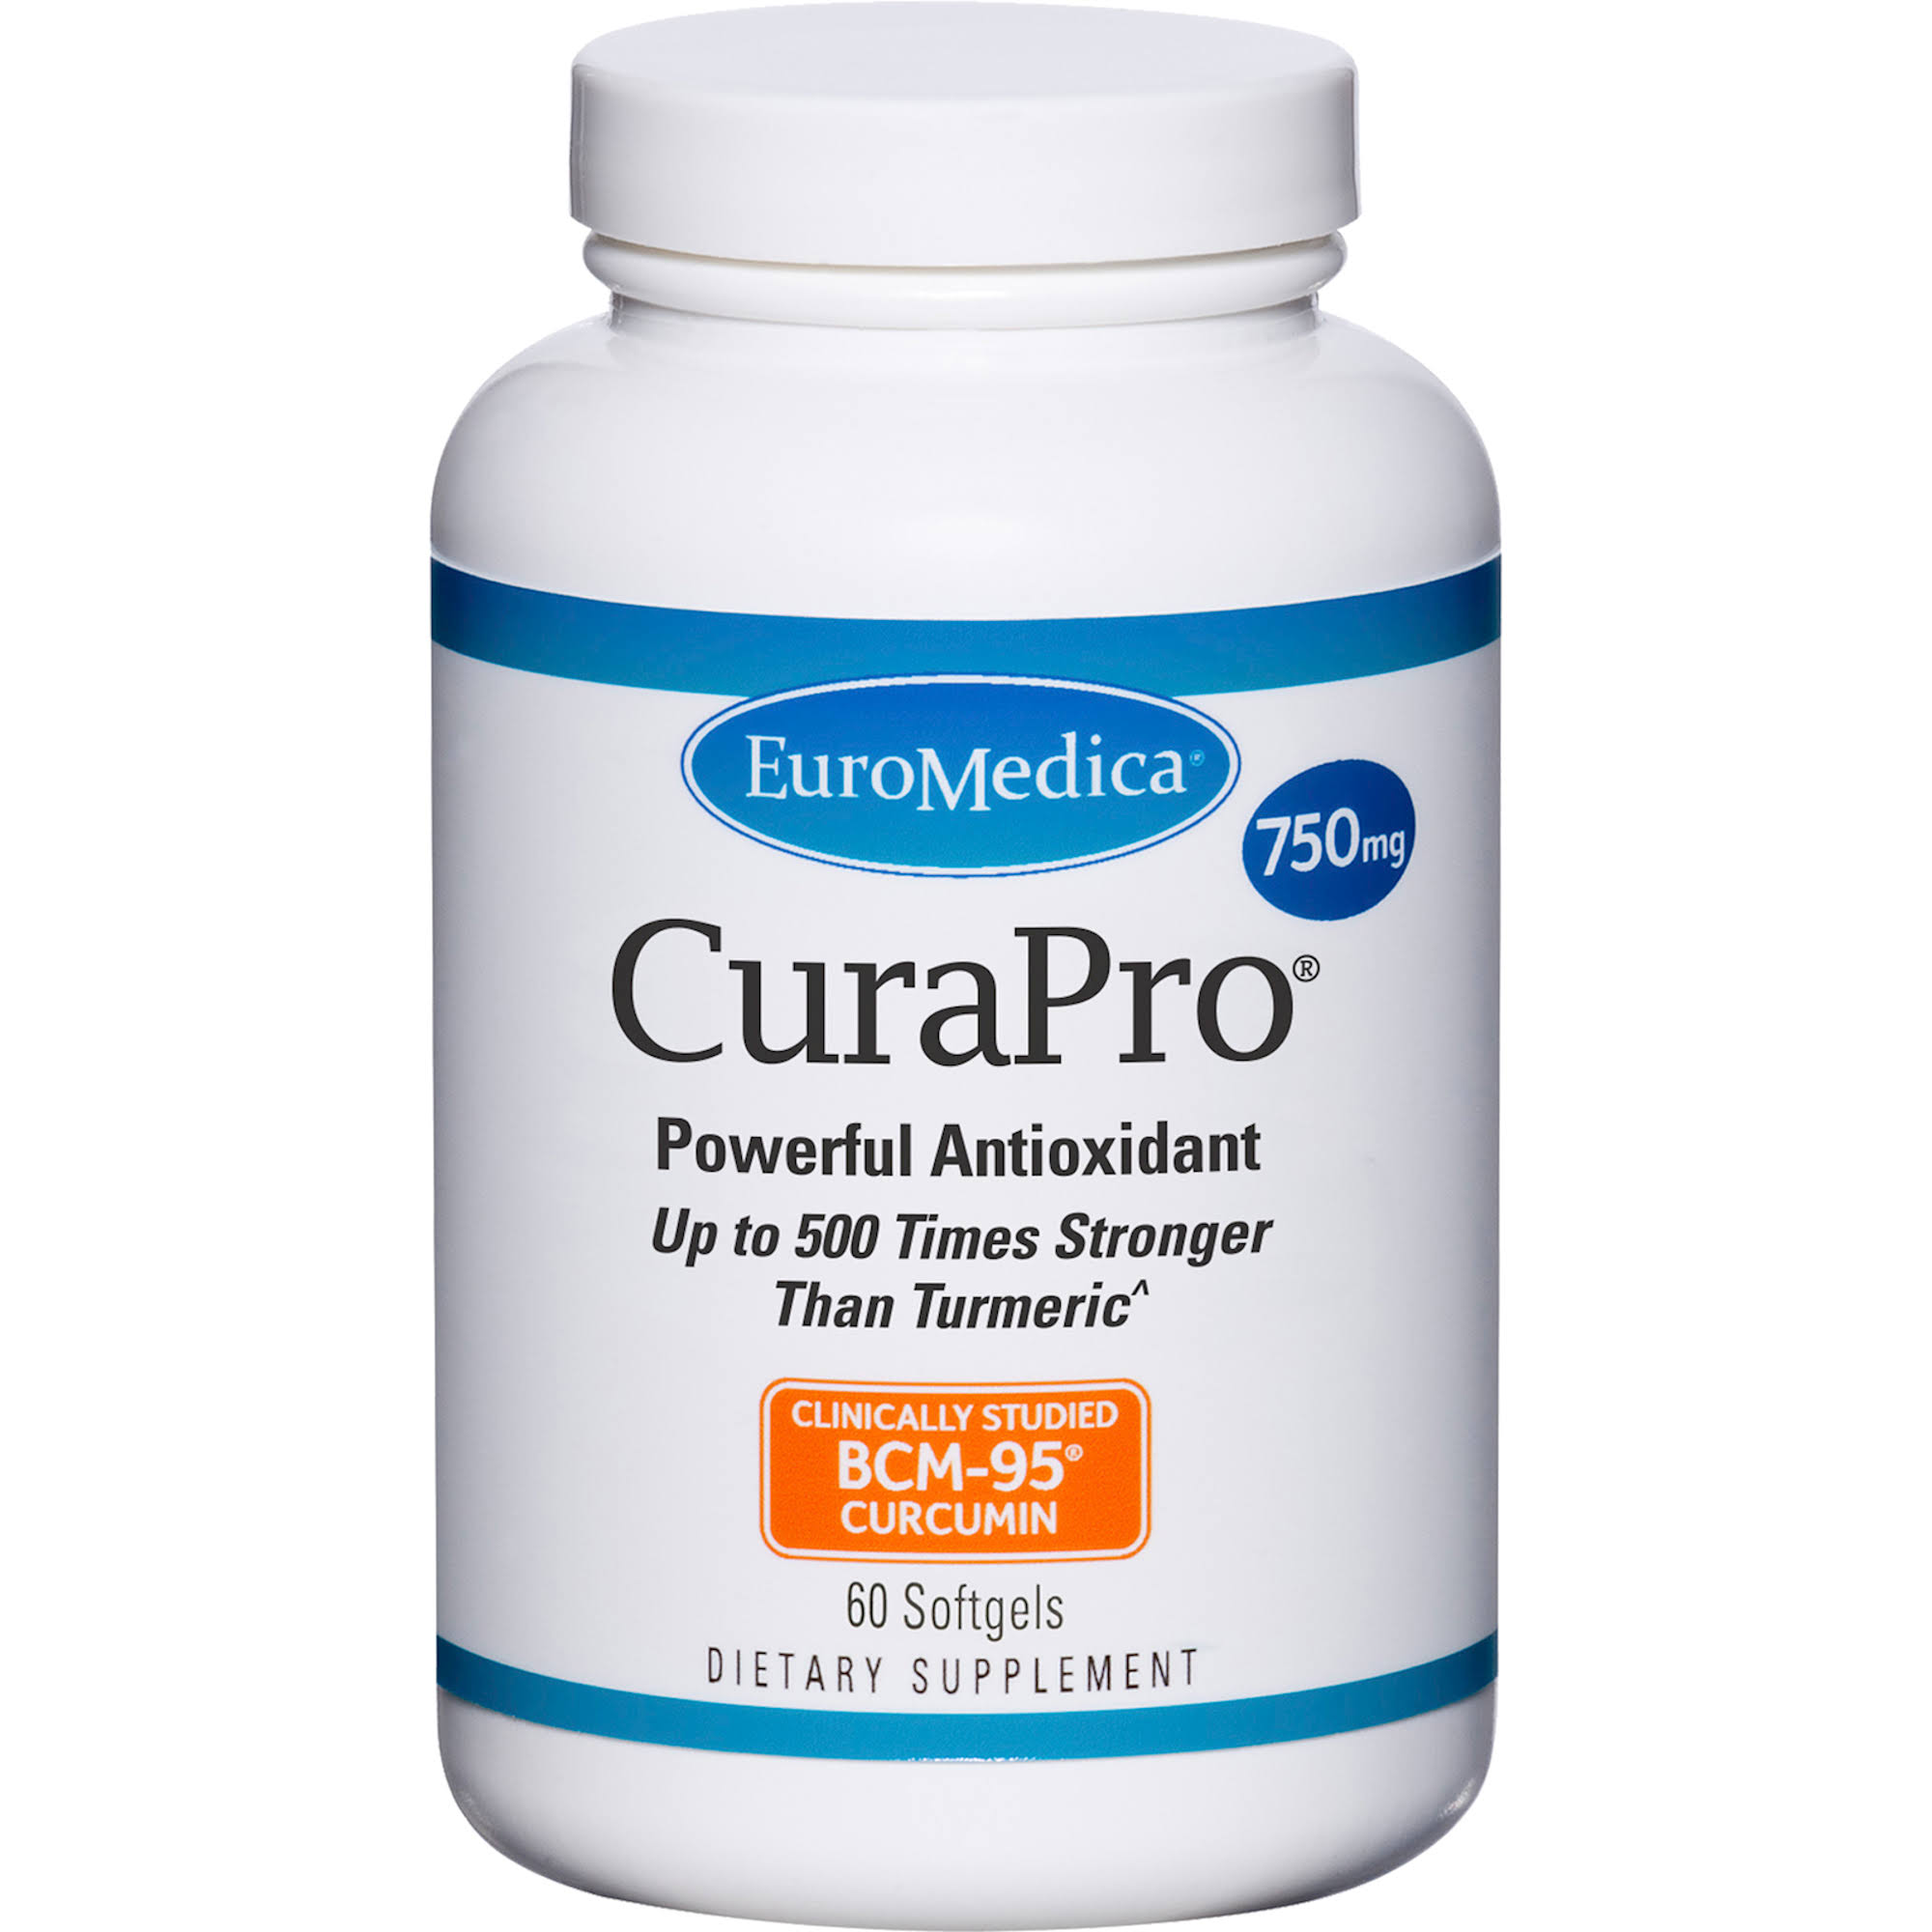 EuroMedica CuraPro Supplement - 750mg, 60 Softgels